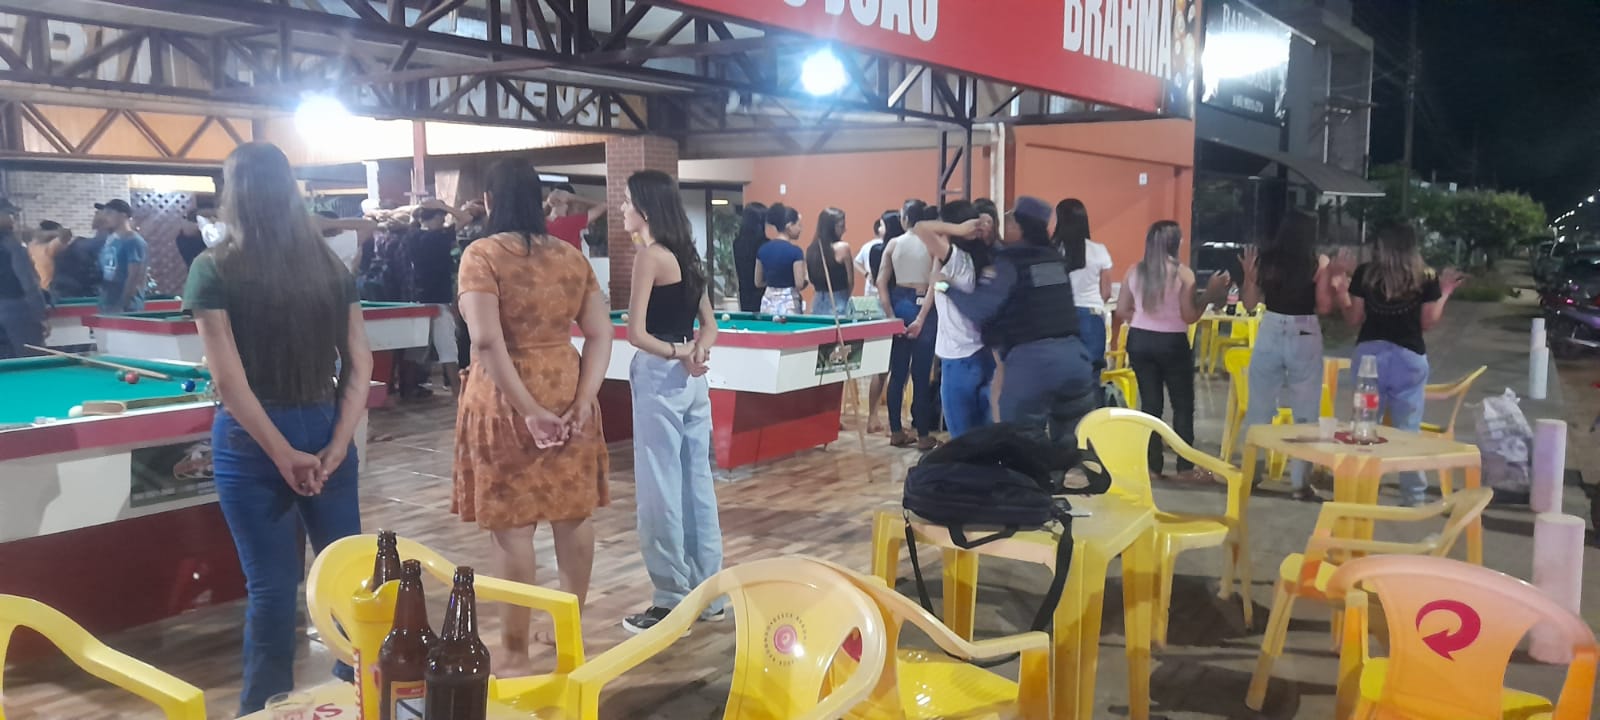 Policia Militar intensifica abordagens e fiscalização de bares e Lanchonetes de Guarantã do Norte